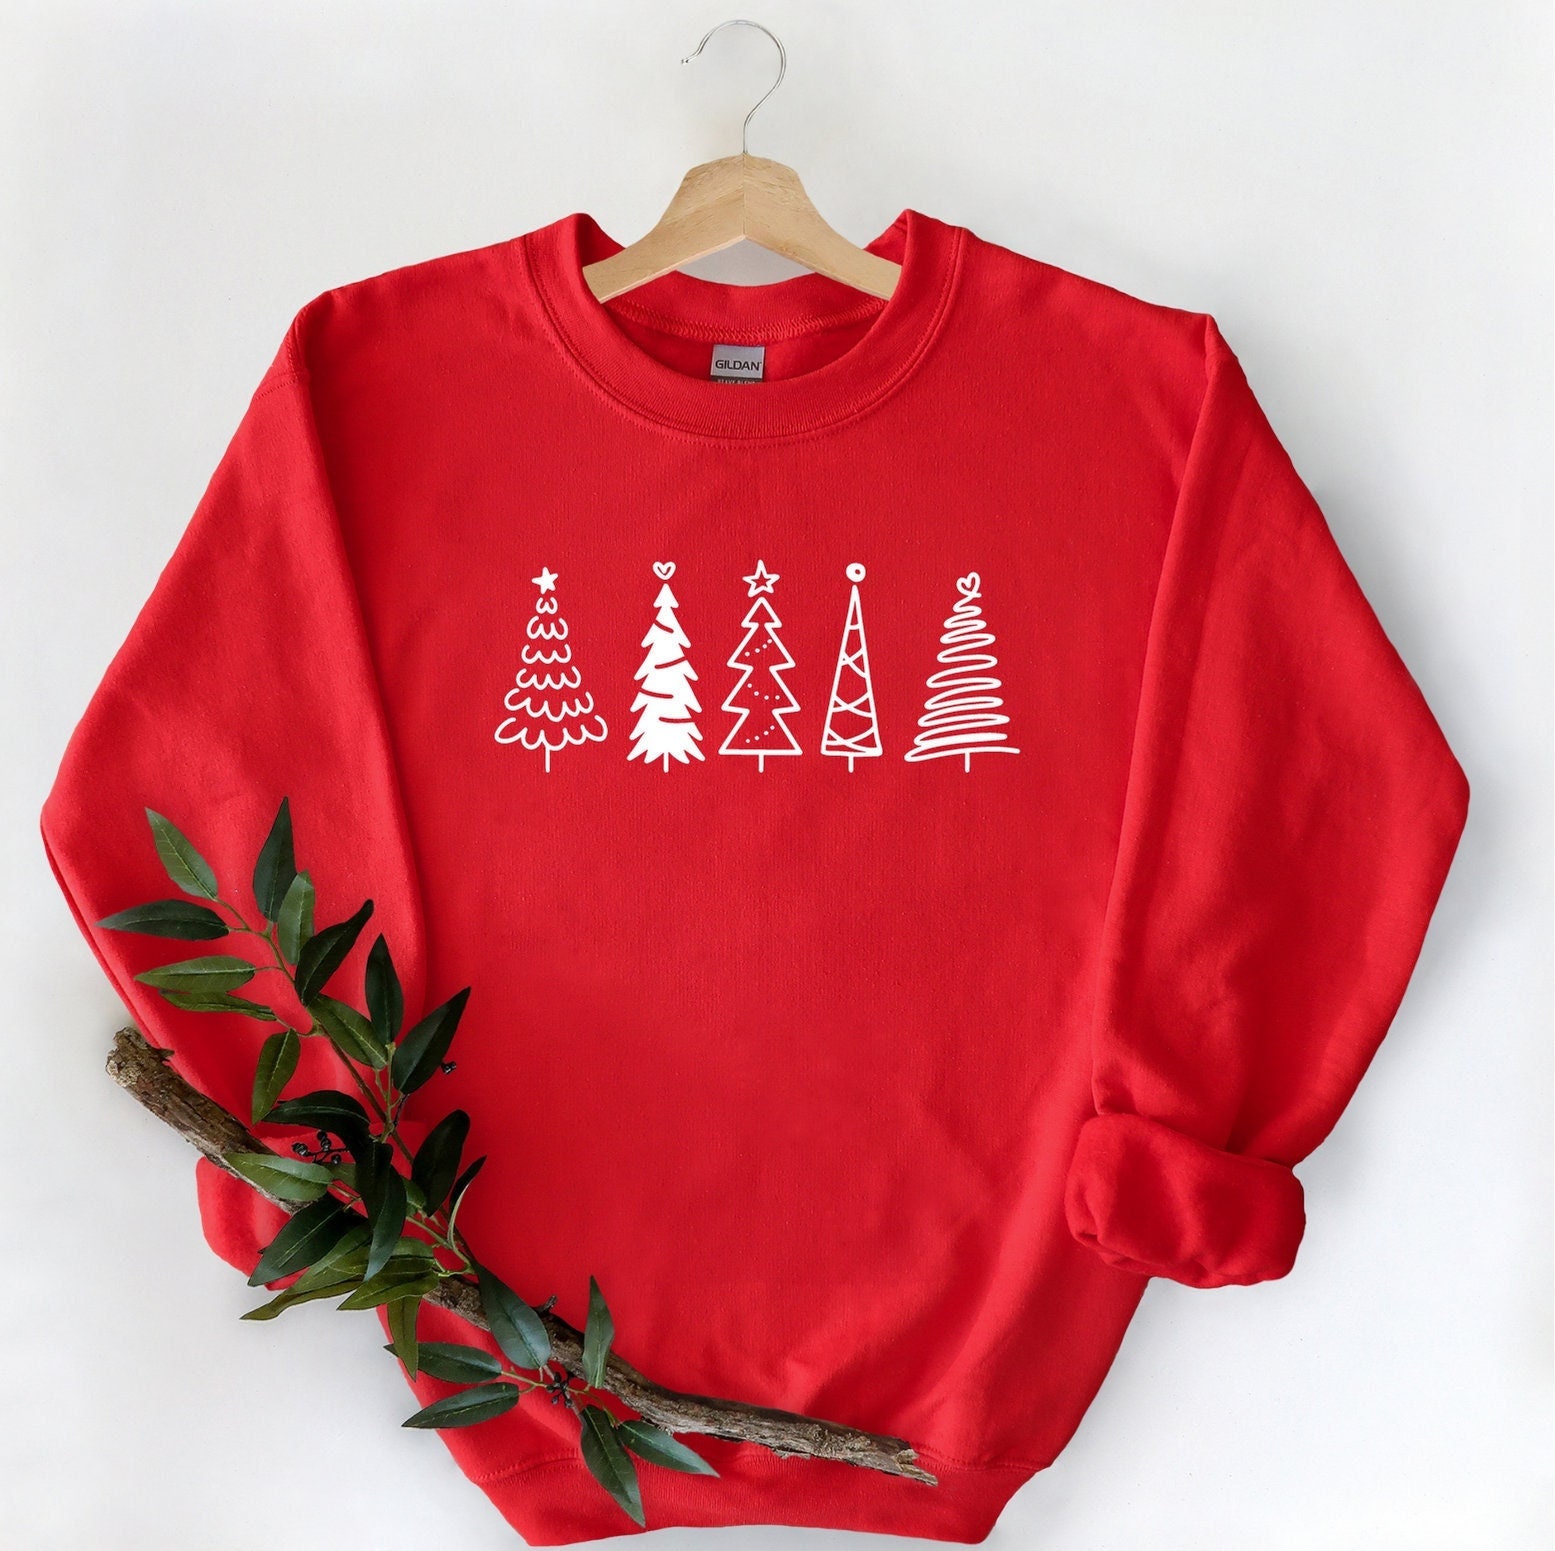 Weihnachtsbaum Sweatshirt, Tannenbäume Weihnachtspullover Für Frauen, Weihnachtspullover, Tannenbaum Shirt von ComfyShirtsUS